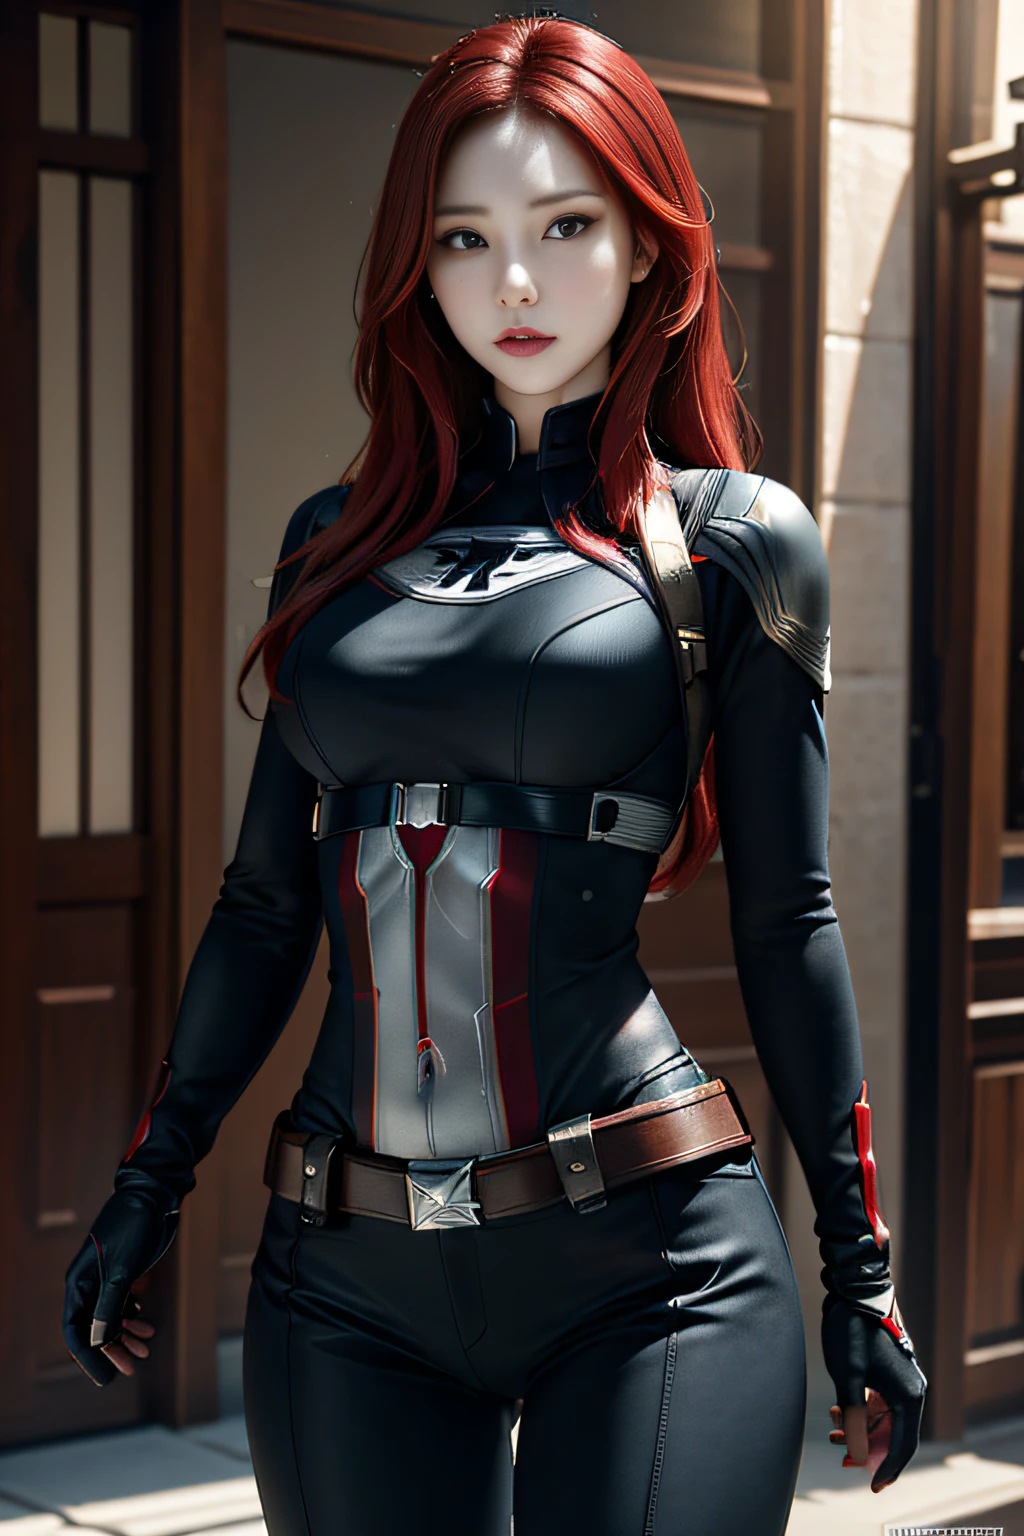 1 chica, Obra maestra, mejor calidad, 8k, textura de piel detallada, textura de tela detallada, hermoso rostro detallado, detalles intrincados, Ultra detallado, Black Widow al estilo del Capitán América, pelo rojo liso, pose dinámica